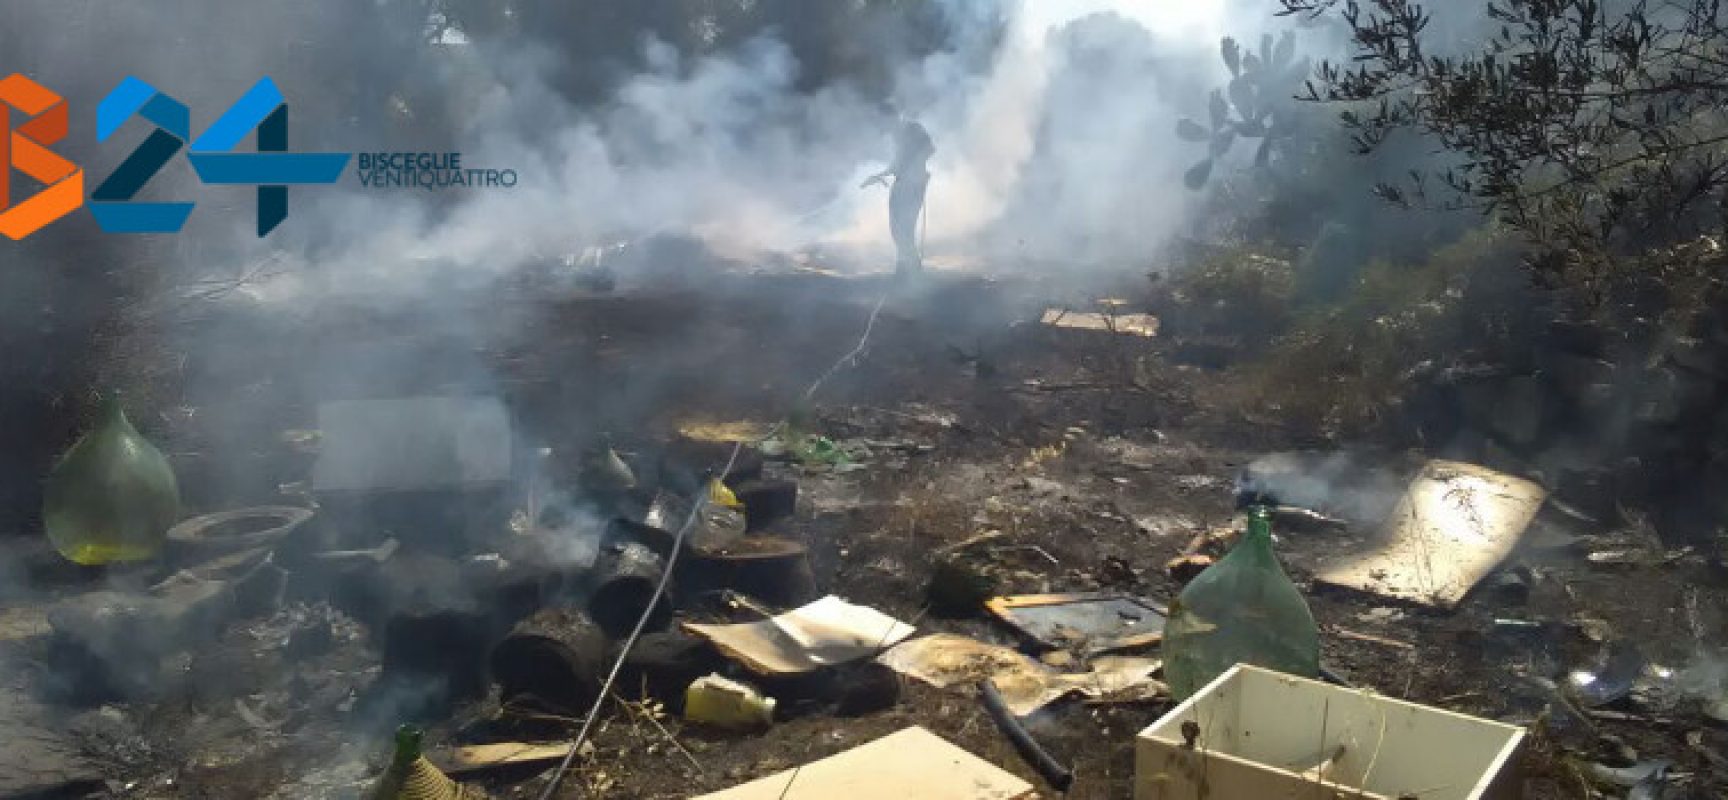 Incendio di rifiuti e sterpaglie in zona Lama di Macina / FOTO